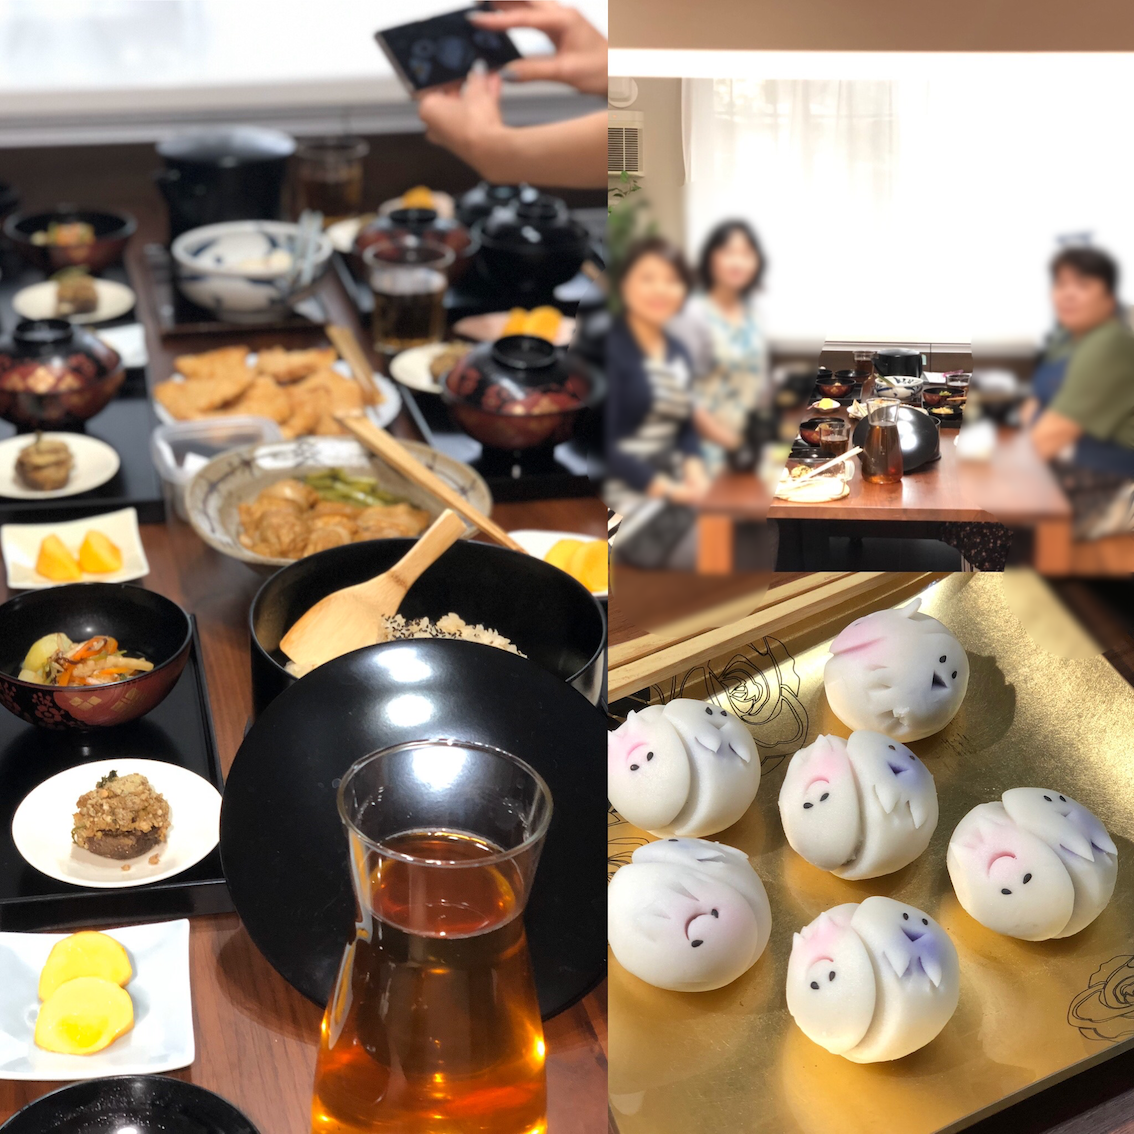 (和ごはん・食育研究会)-活動報告-2019年10月「茶懐石精進料理教室」を開催しました